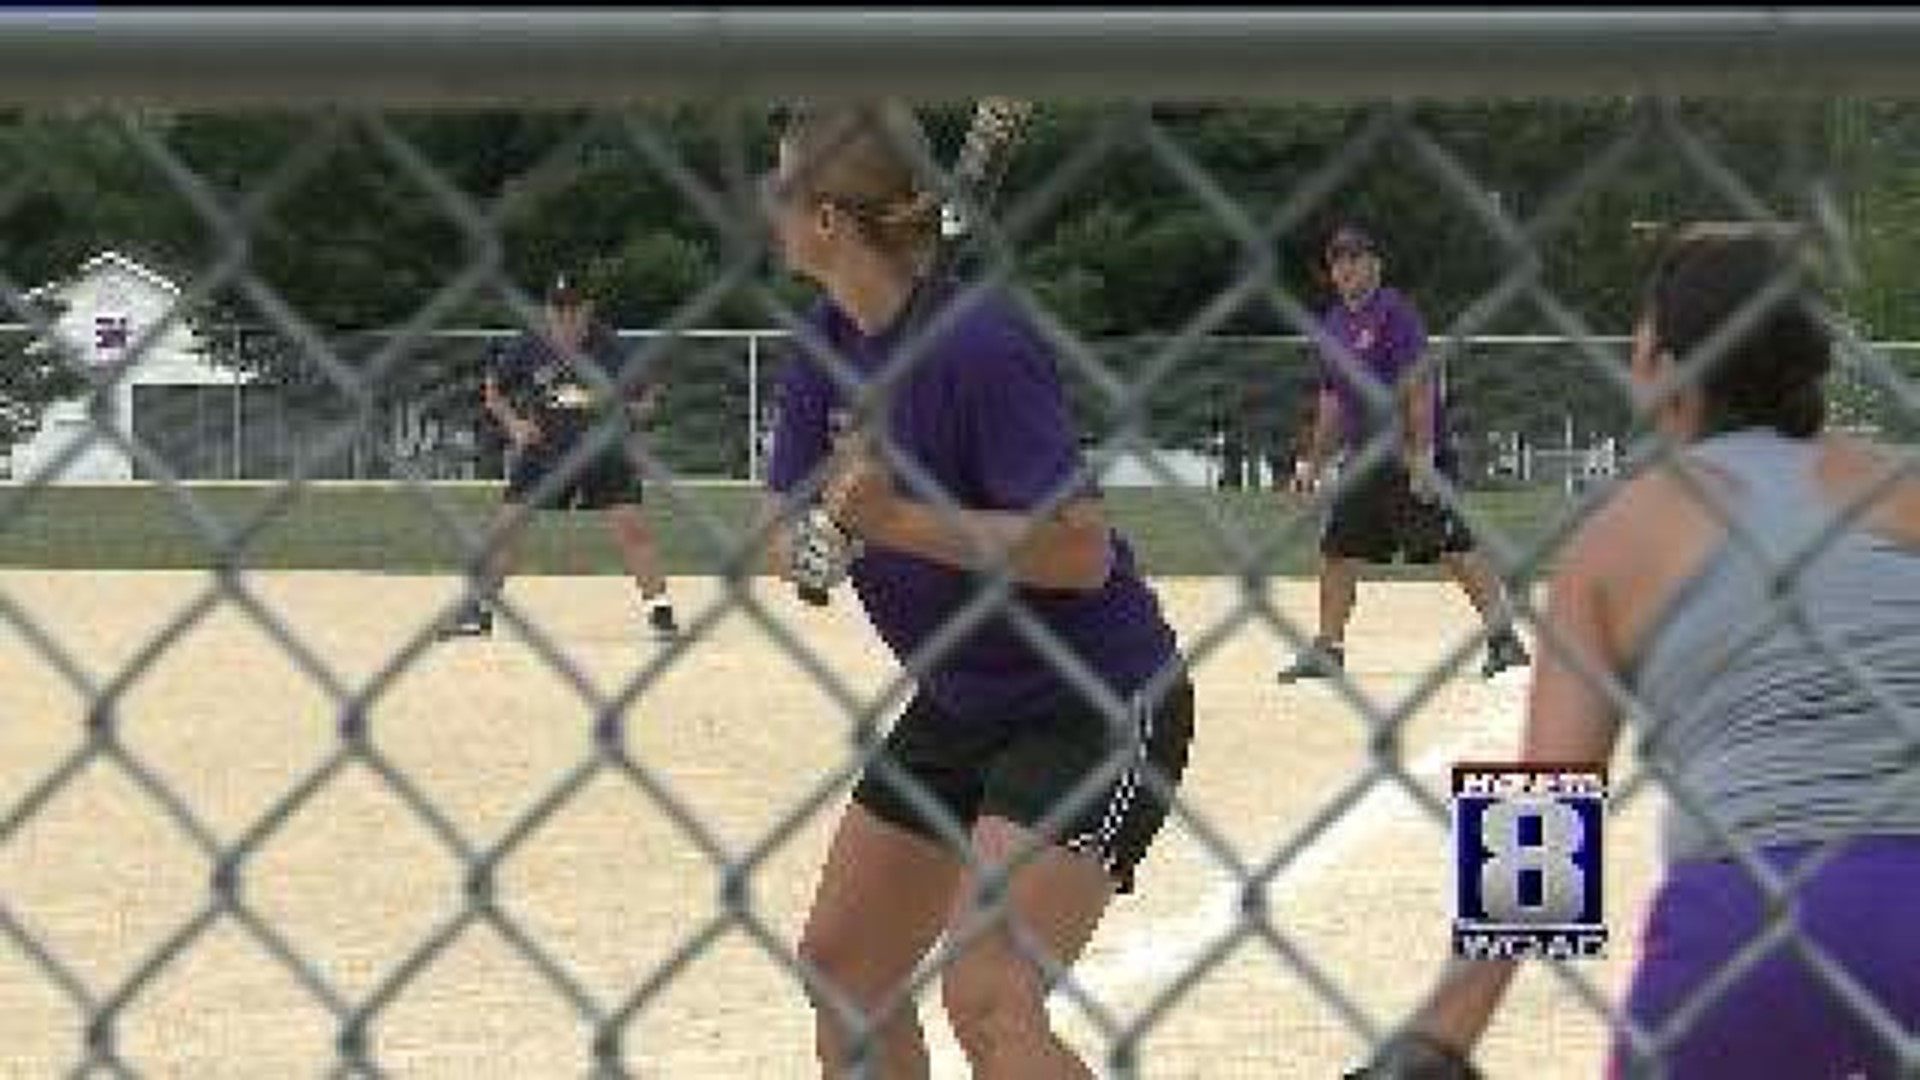 Softball tourney benefits DeWitt Volunteer Fire Dept